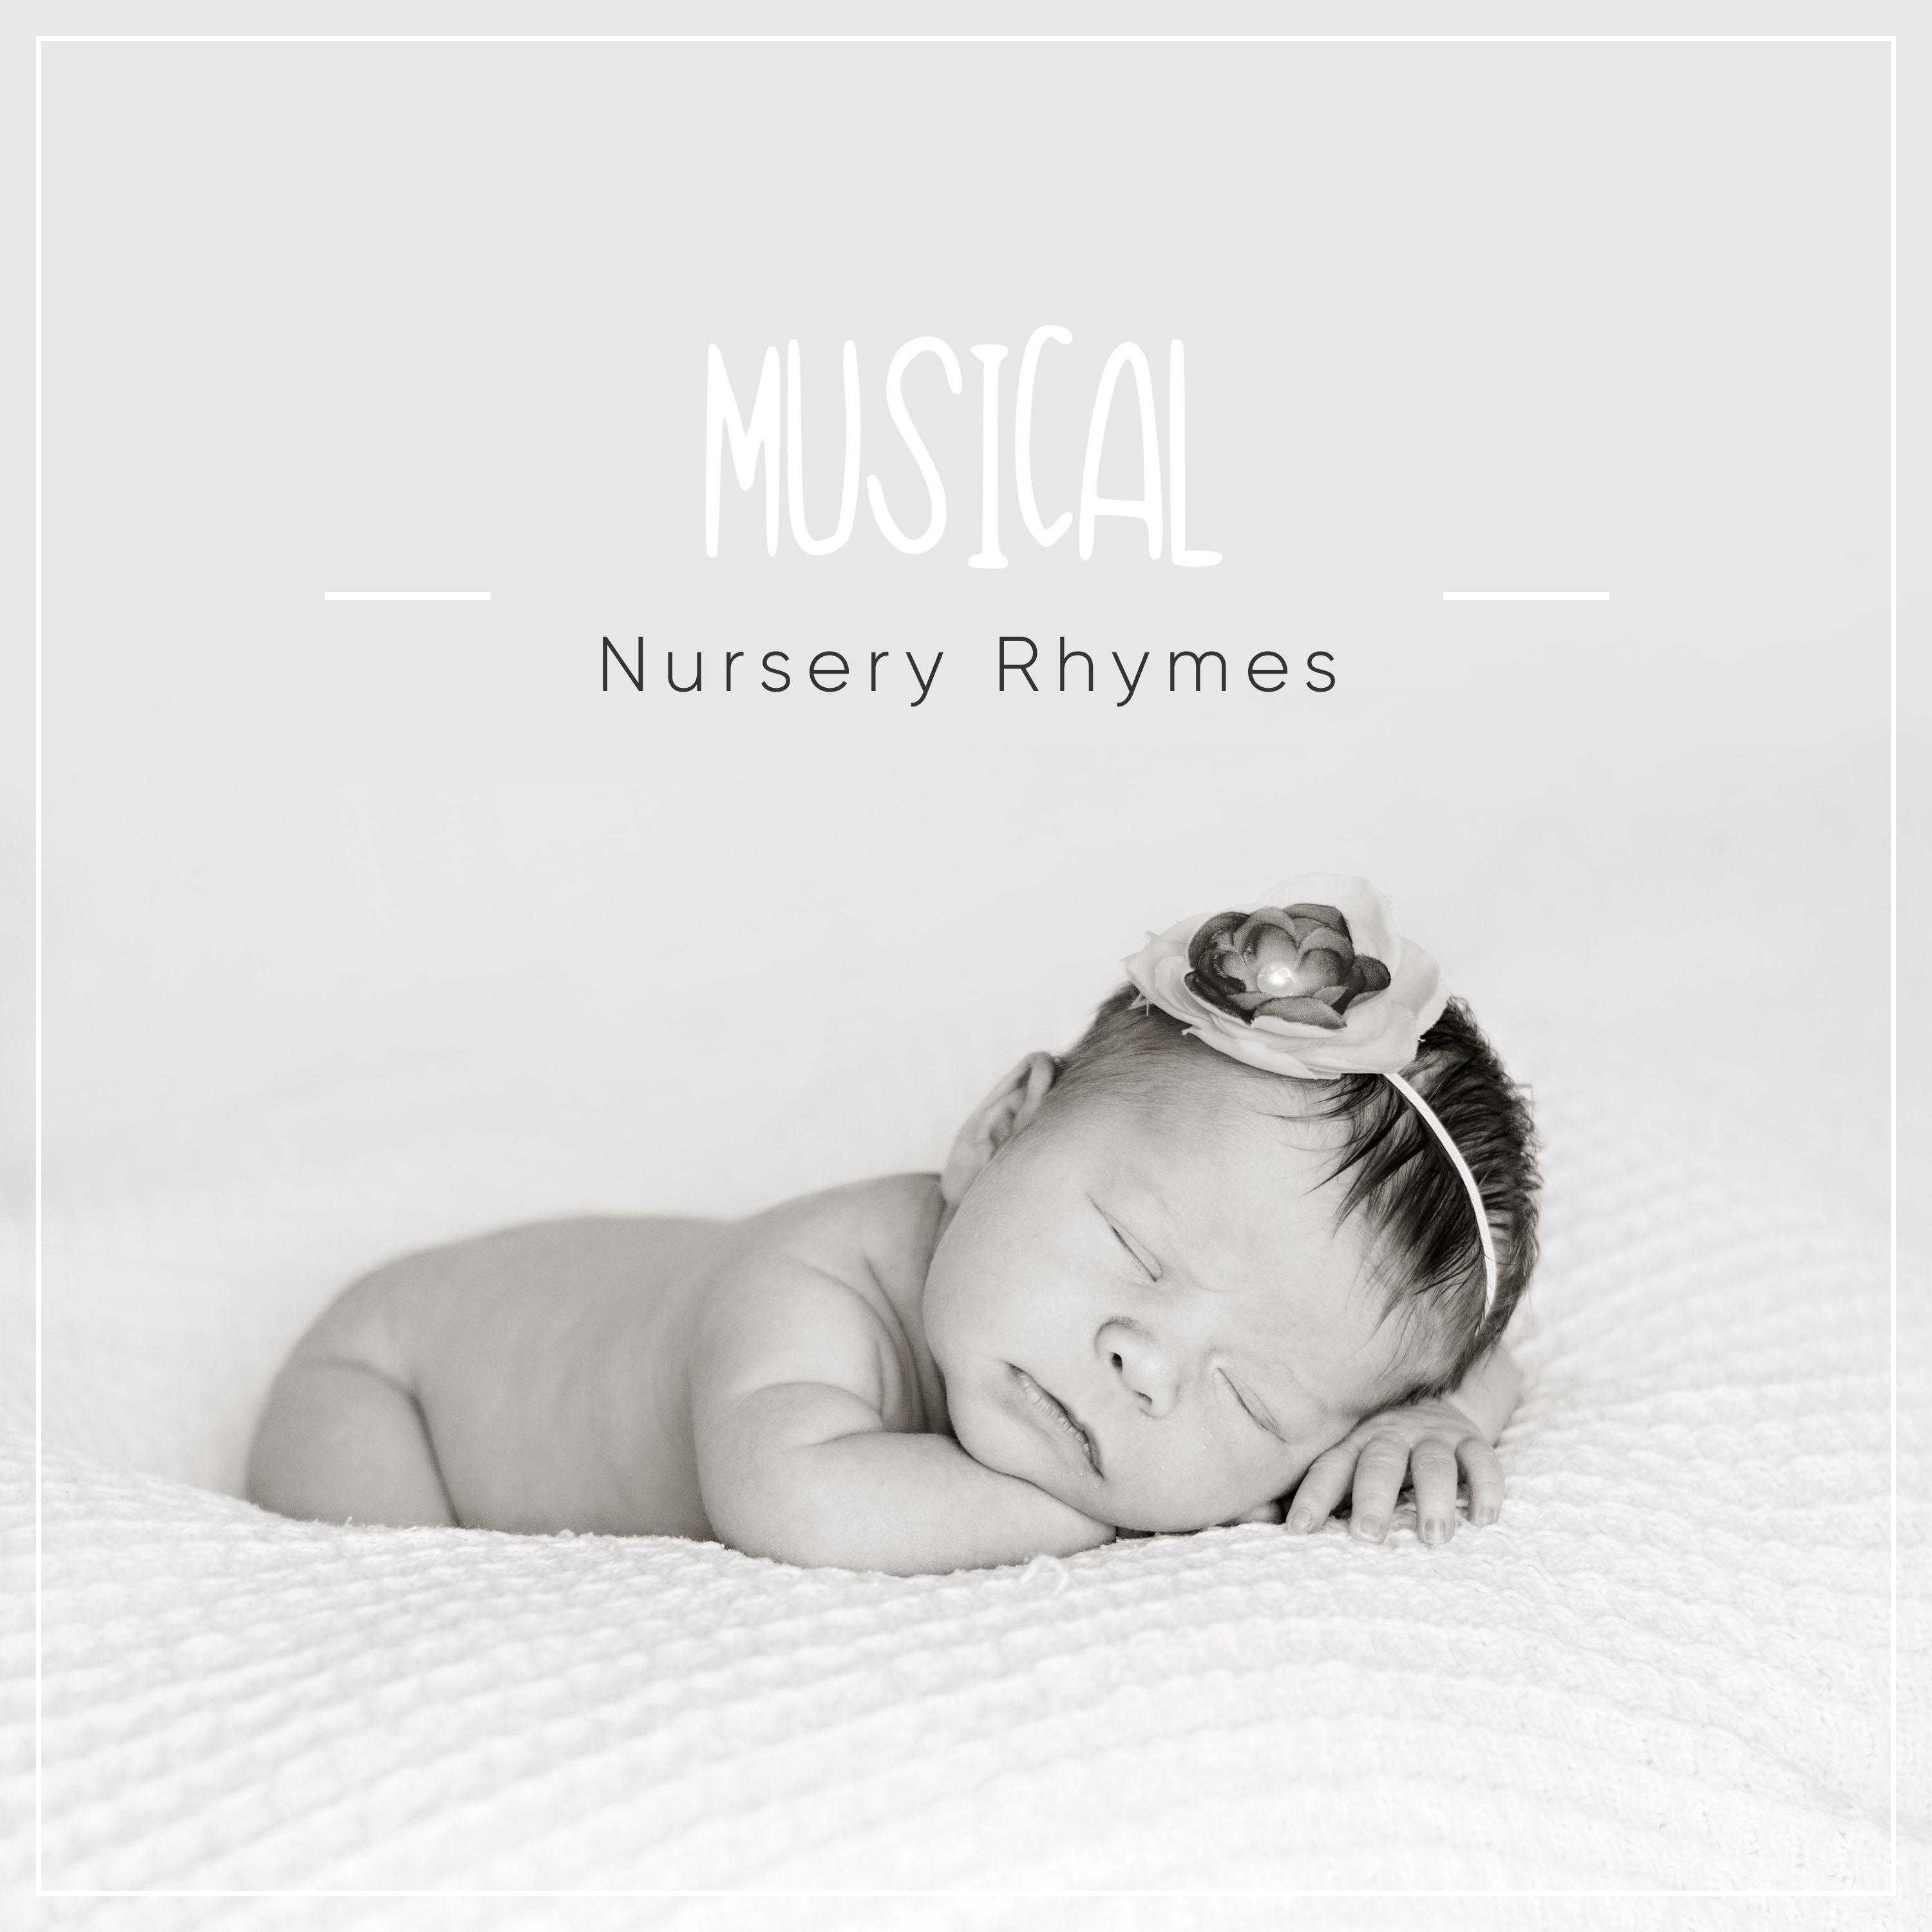 11 Musical Nursery Rhymes for Sleeping